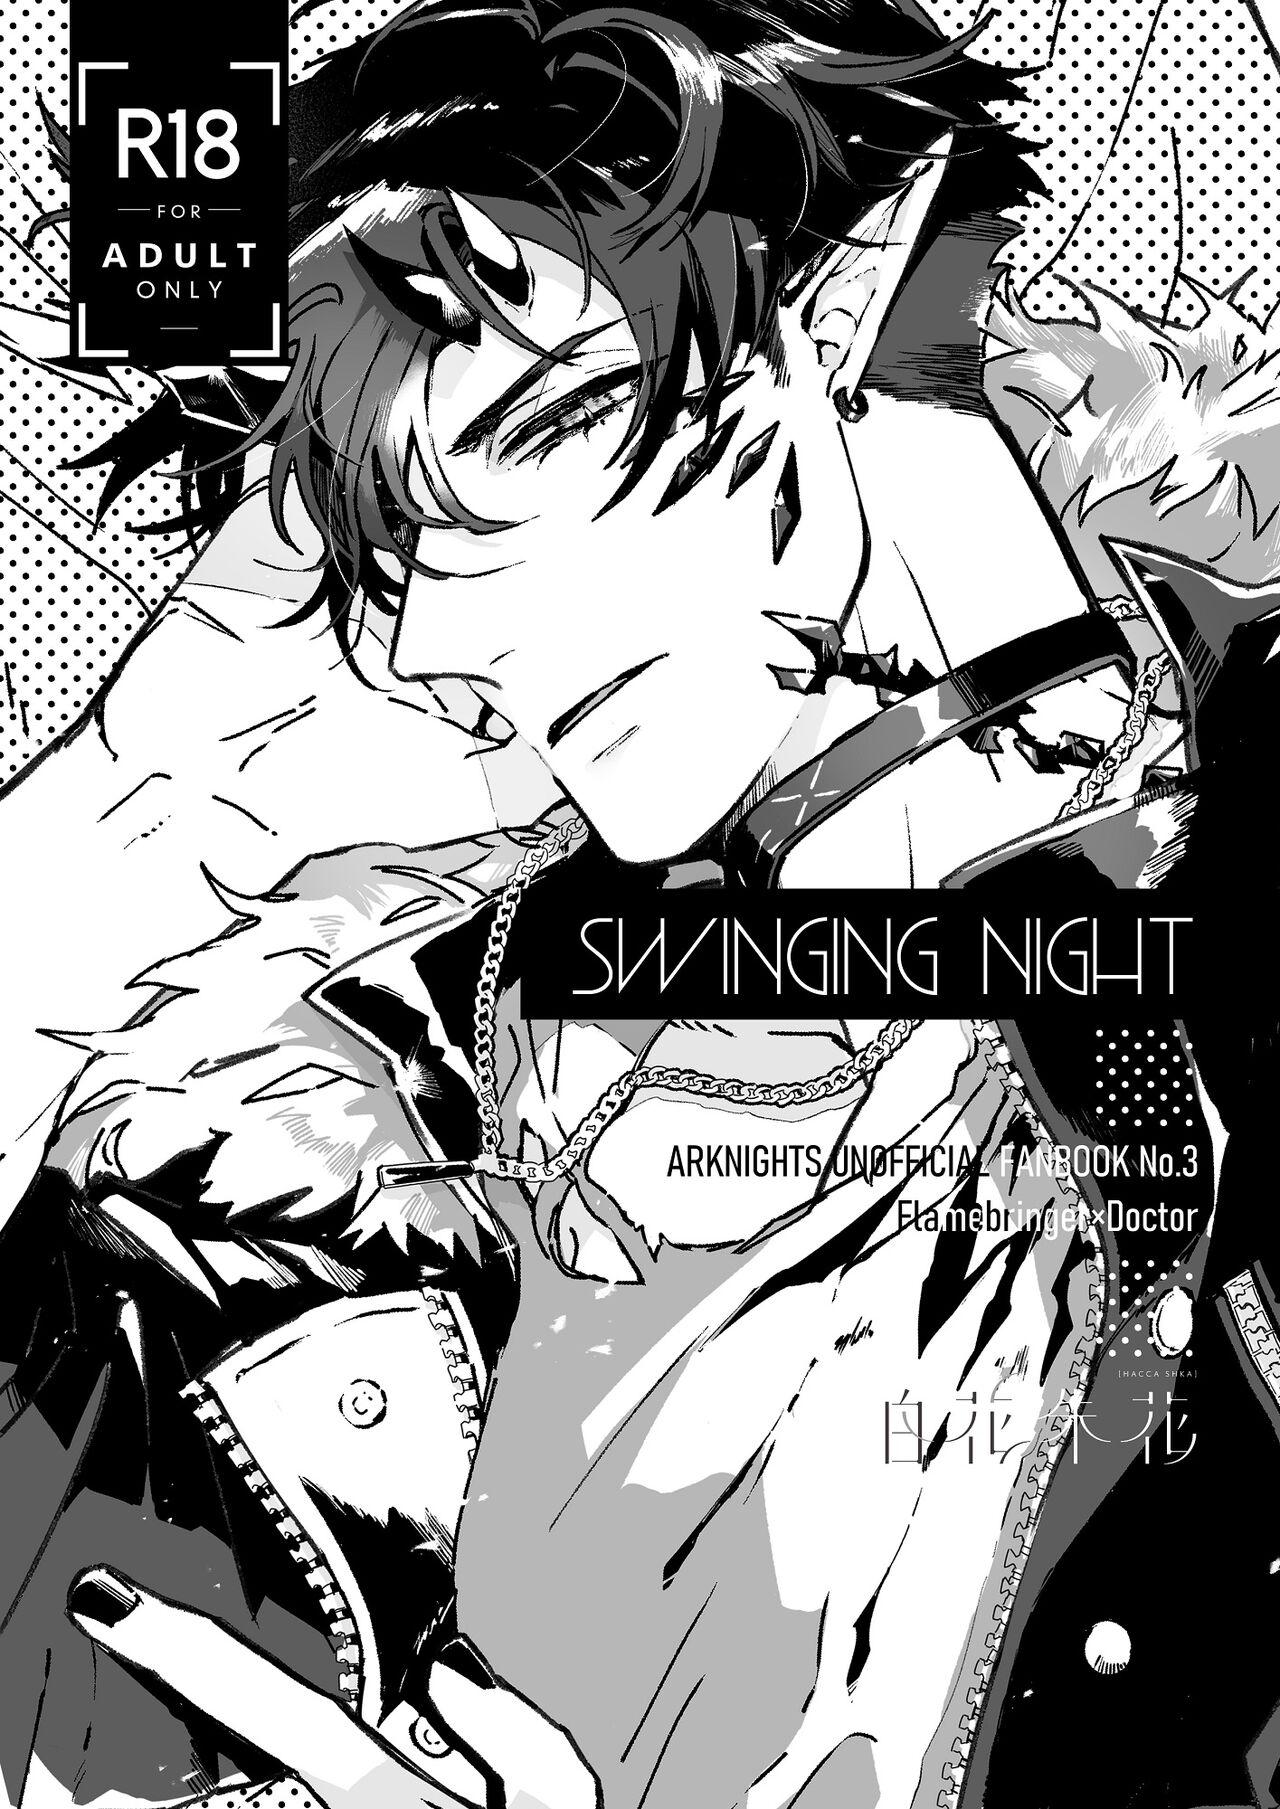 SWINGING NIGHT 0